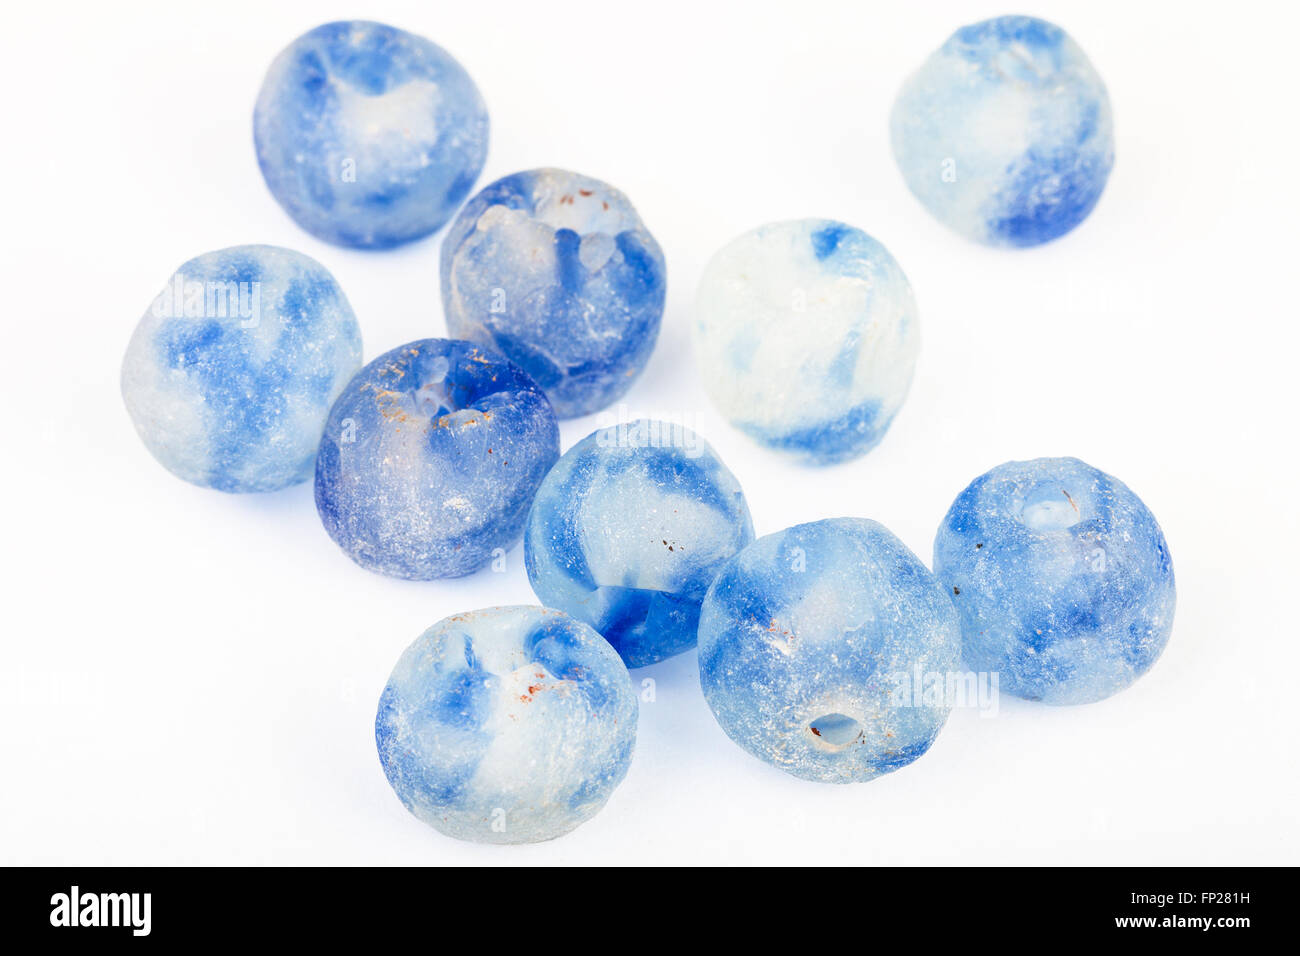 Plusieurs perles de verre peint bleu rugueux sur fond blanc Banque D'Images